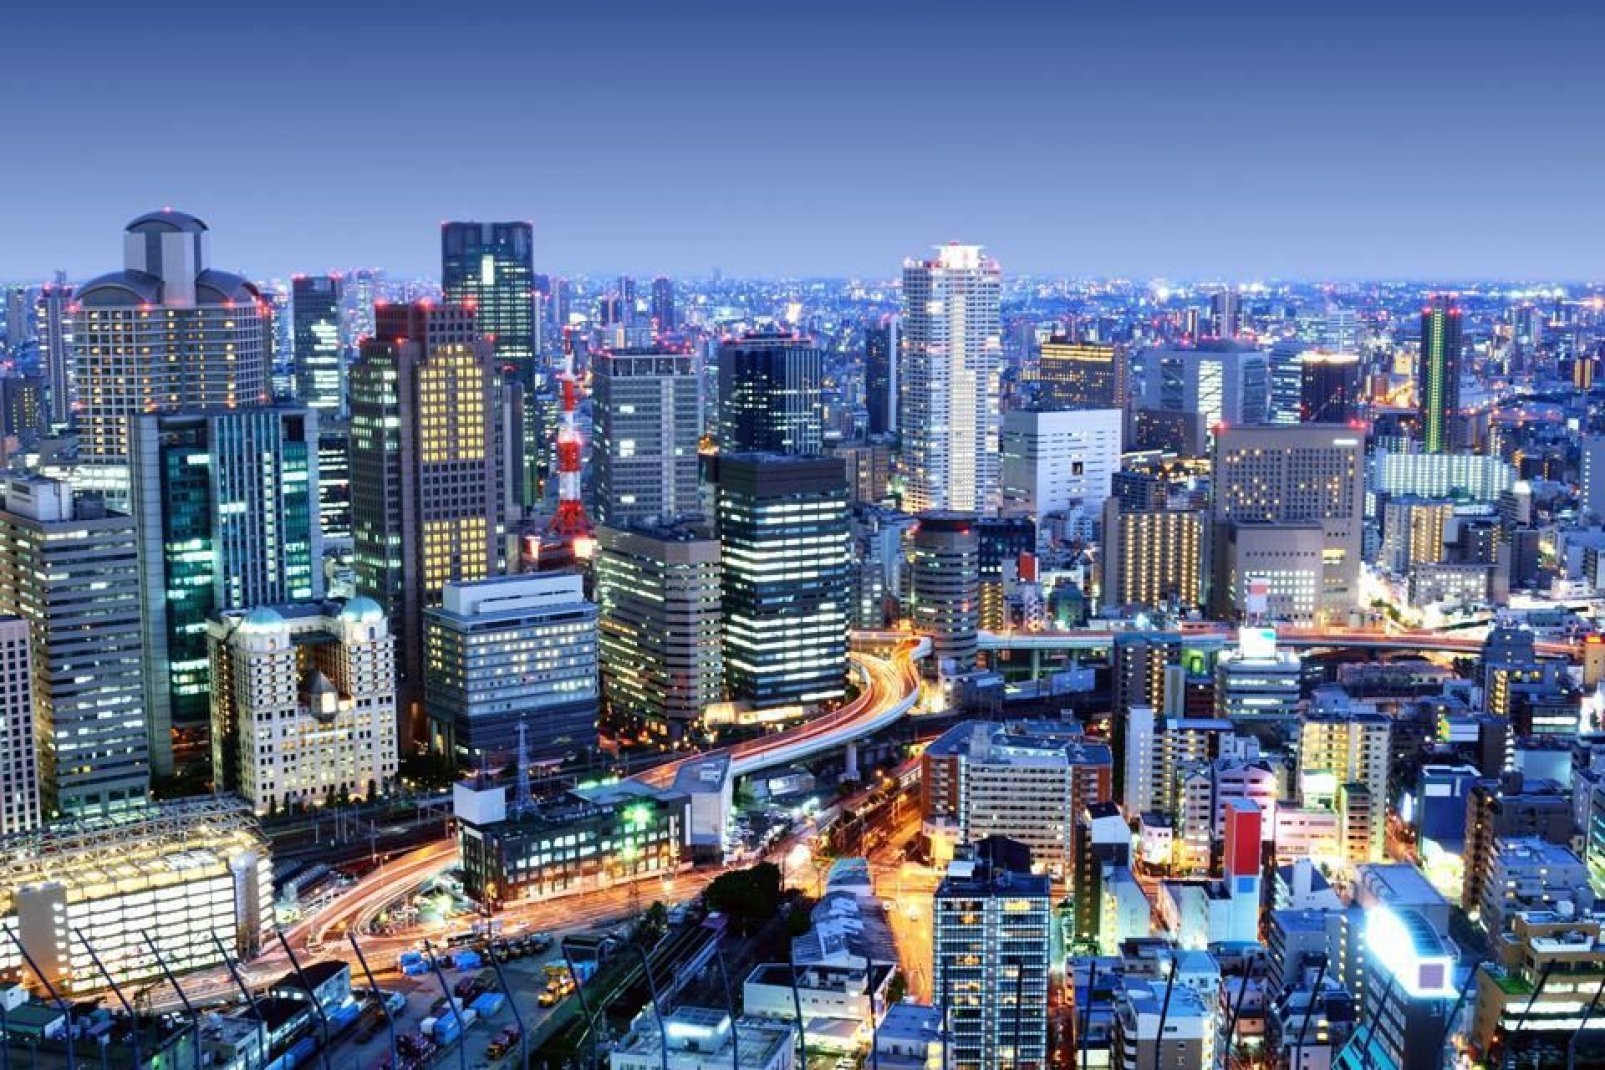 Malgré son architecture moderne, Osaka a conservé un art de vivre qui lui est propre à travers ses restaurants, sa vie nocturne et son dialecte, l'Osaka-ben.